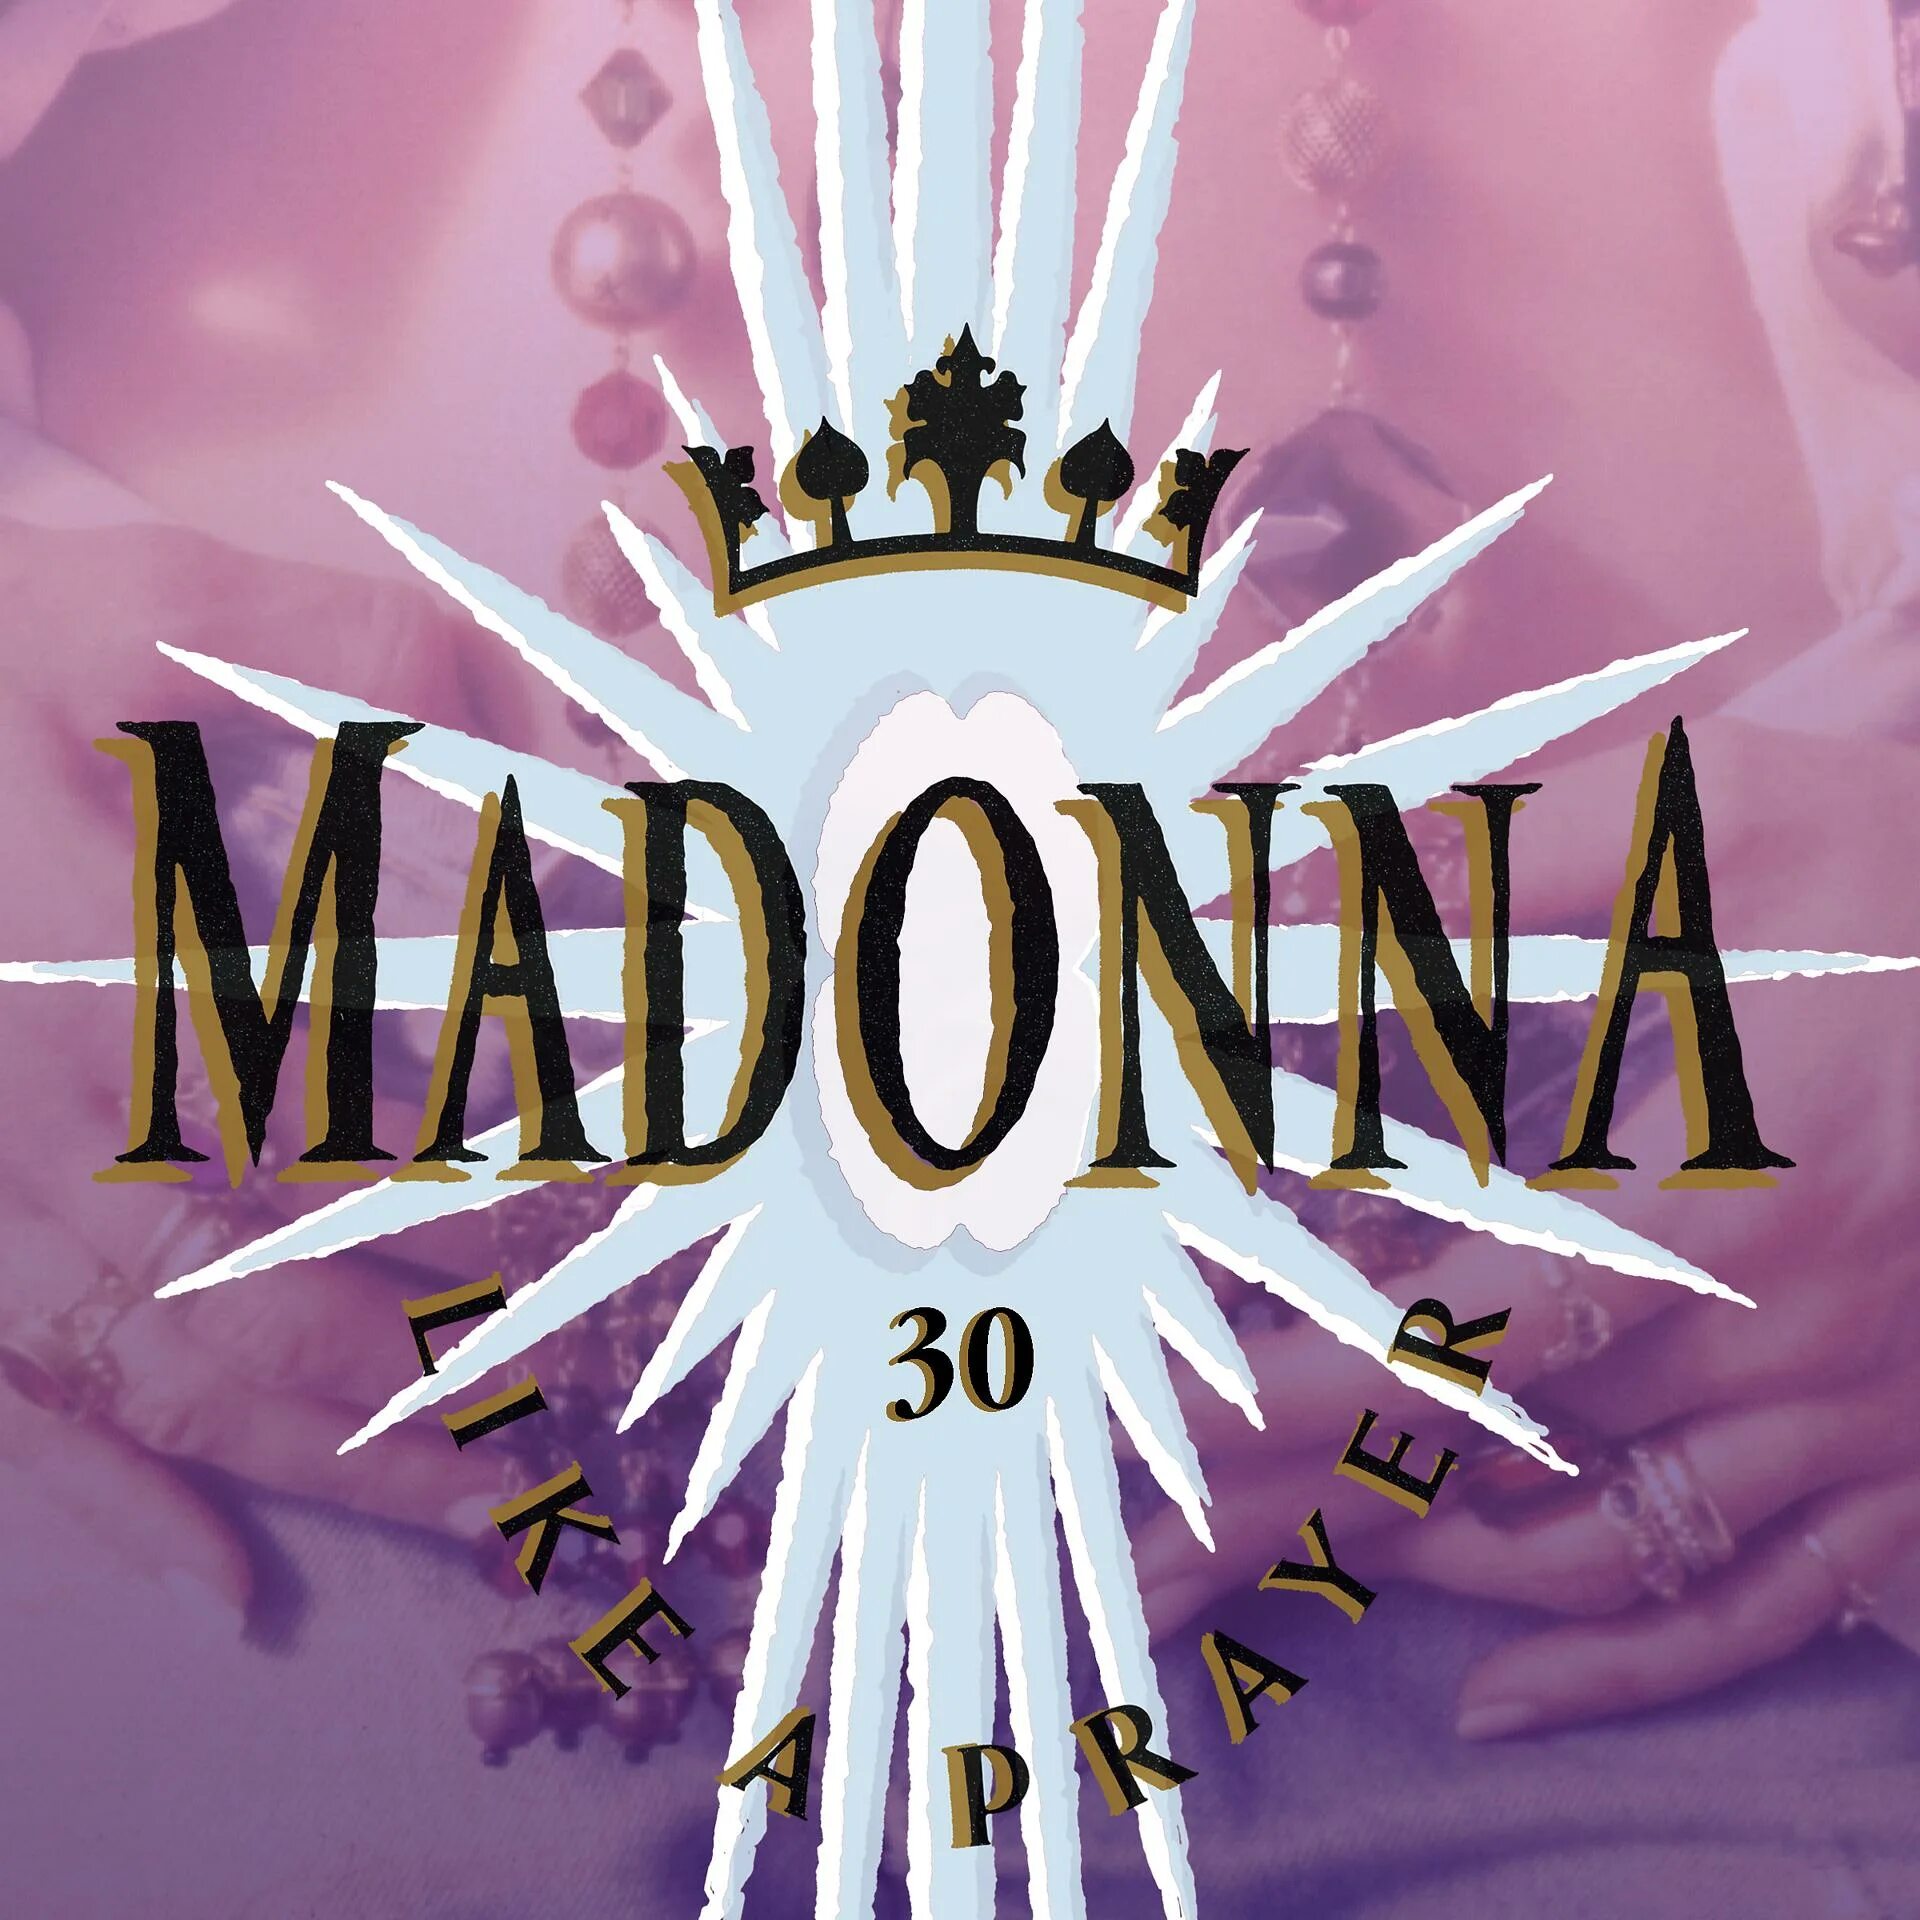 Like madonna песня. Madonna 1989 like a Prayer. Like a Prayer album. Like a Prayer обложка. Madonna like a Prayer album.